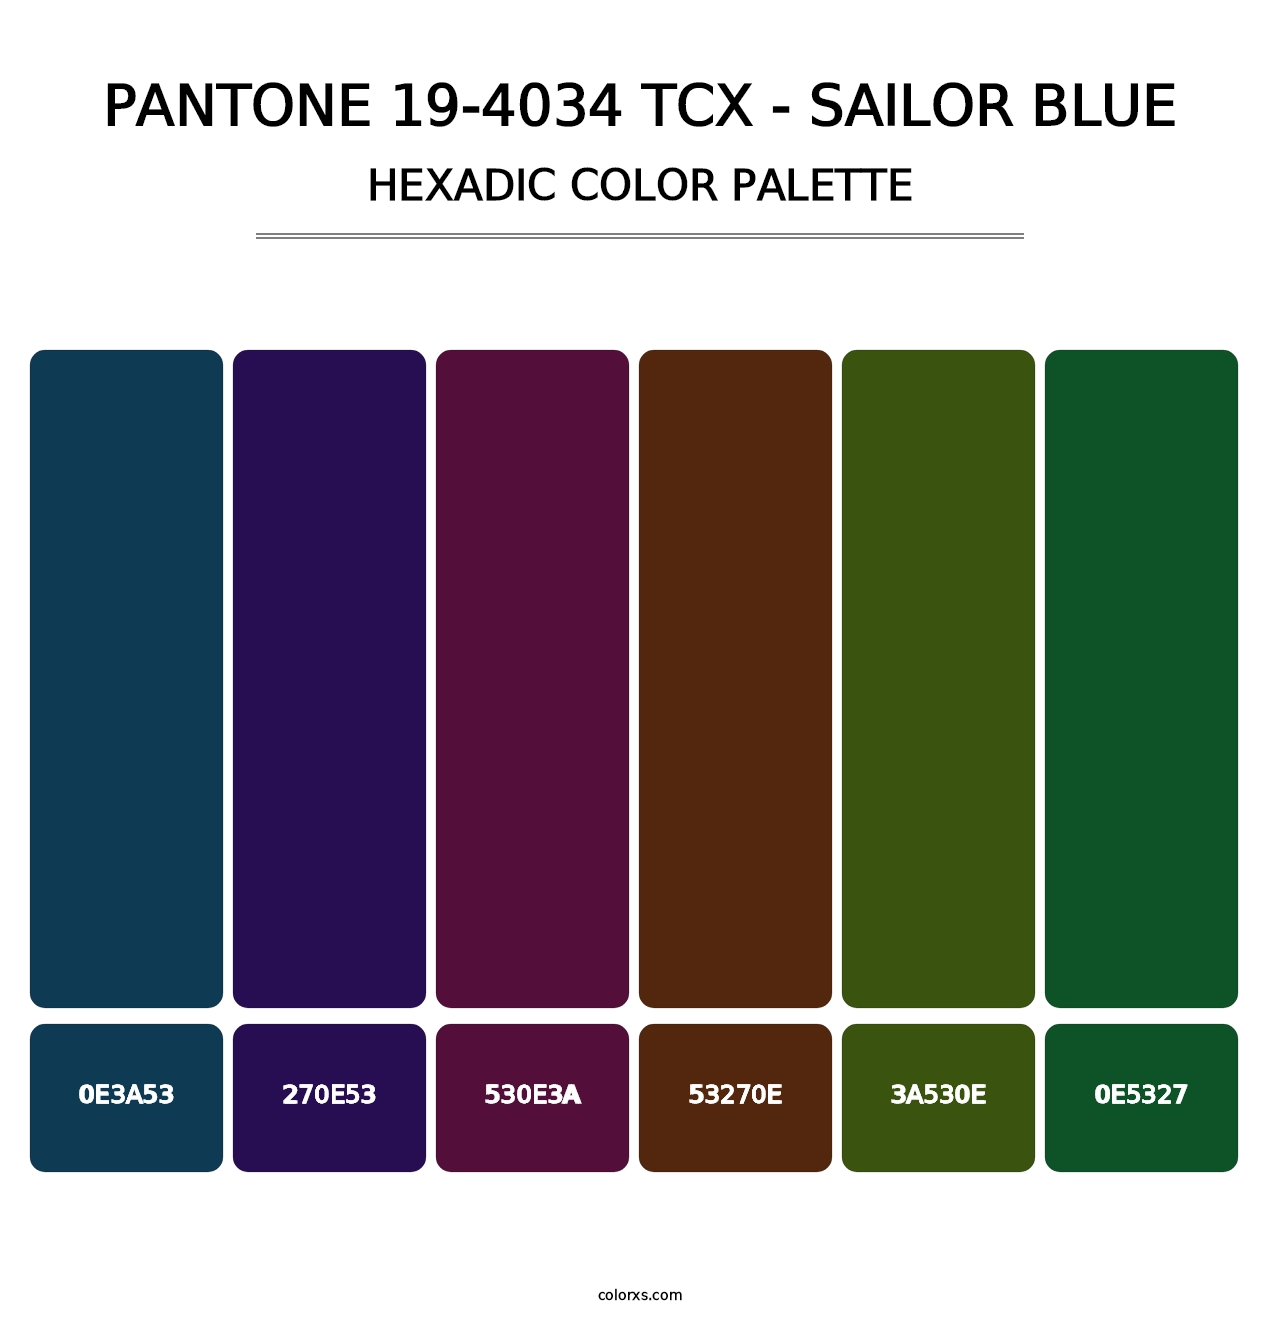 PANTONE 19-4034 TCX - Sailor Blue - Hexadic Color Palette